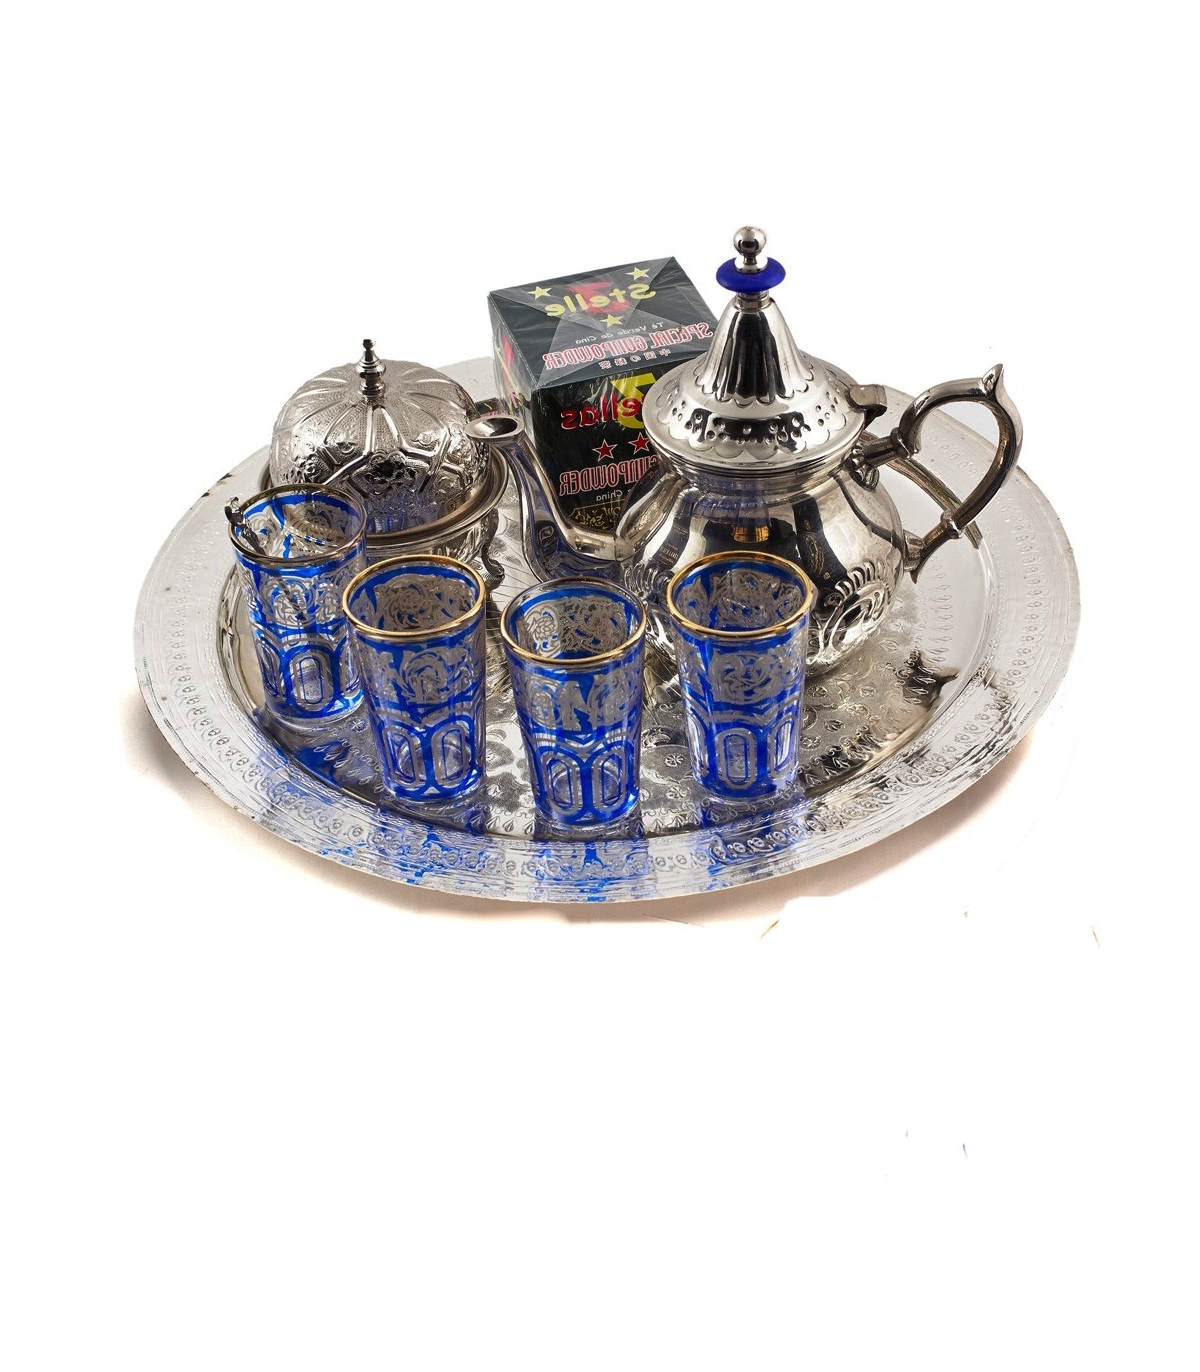 Juego de té tradicional marroquí con teteras decorativas, vasos y